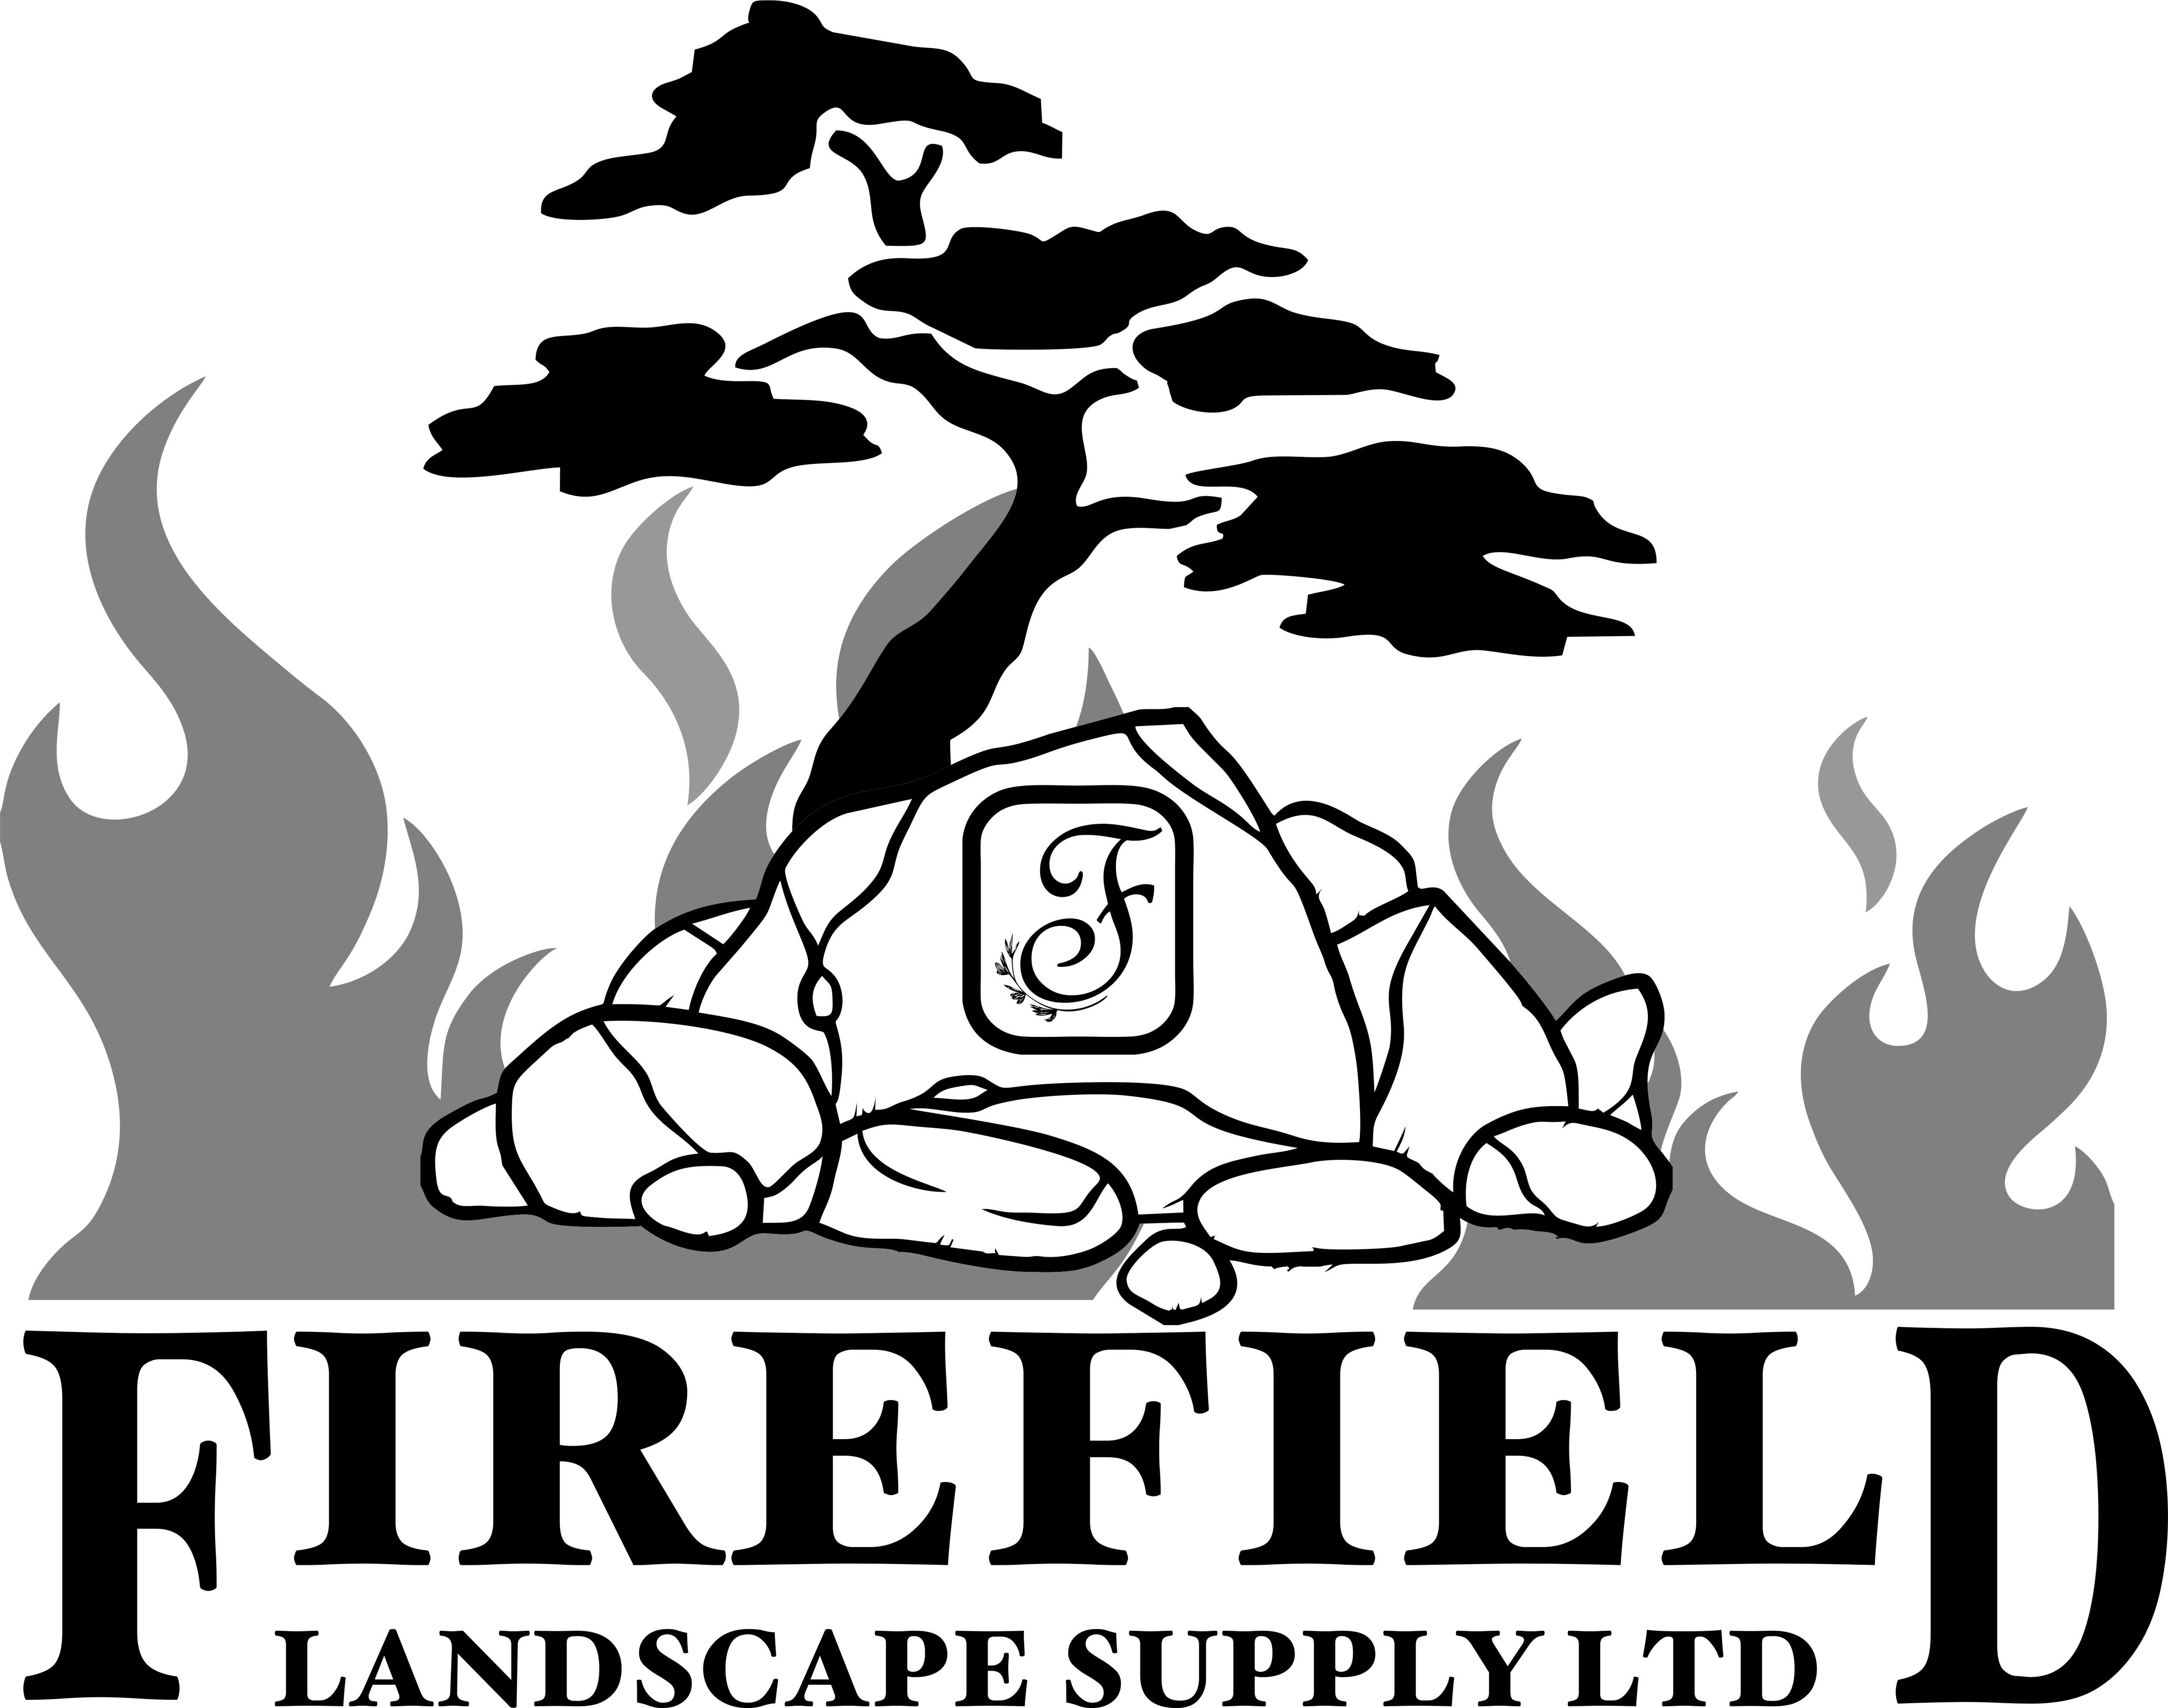 Firefield Landscape Supply Ltd. 